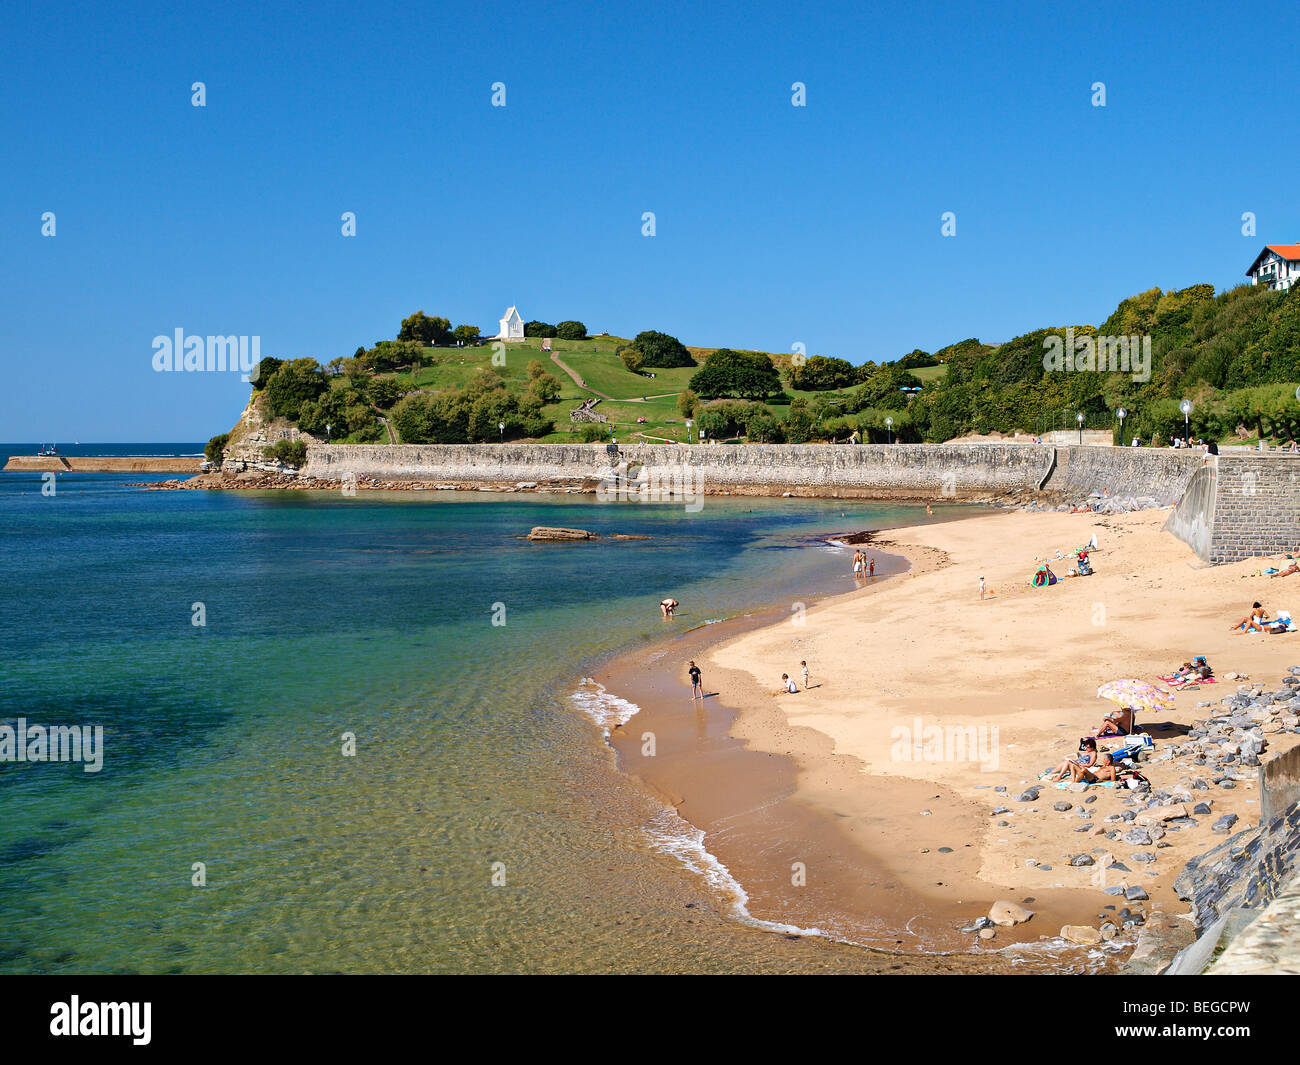 The beach at Saint Jean de Luz, Basque country, France. Stock Photo